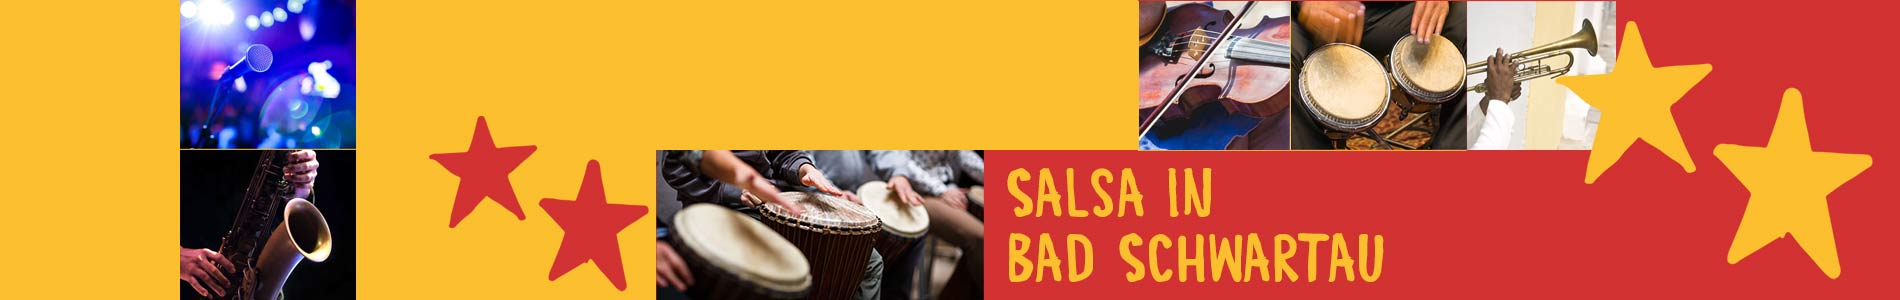 Salsa in Bad Schwartau – Salsa lernen und tanzen, Tanzkurse, Partys, Veranstaltungen